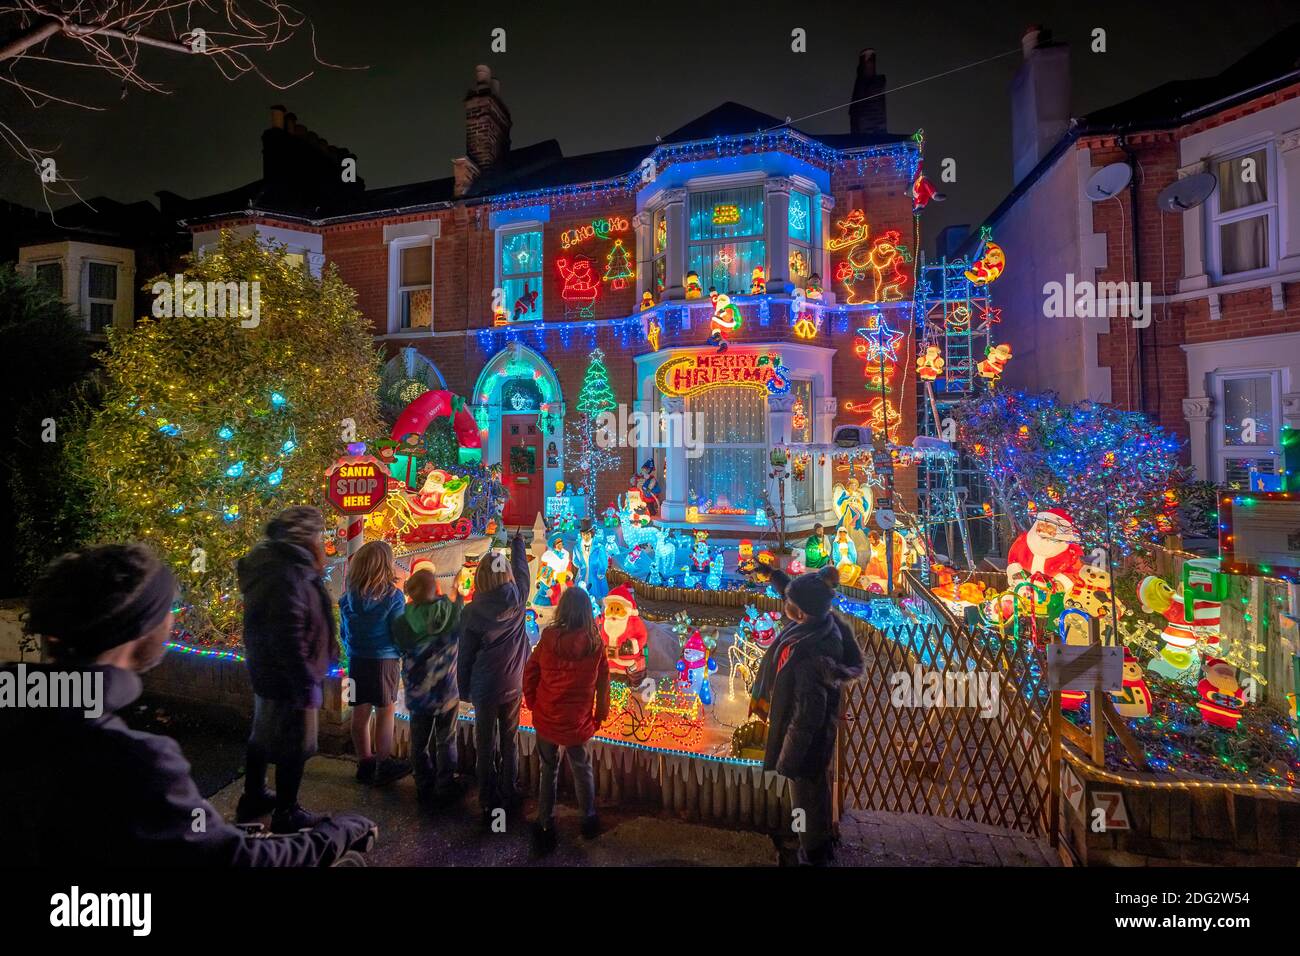 Noël 2020 Banque de photographies et d'images à haute résolution - Alamy